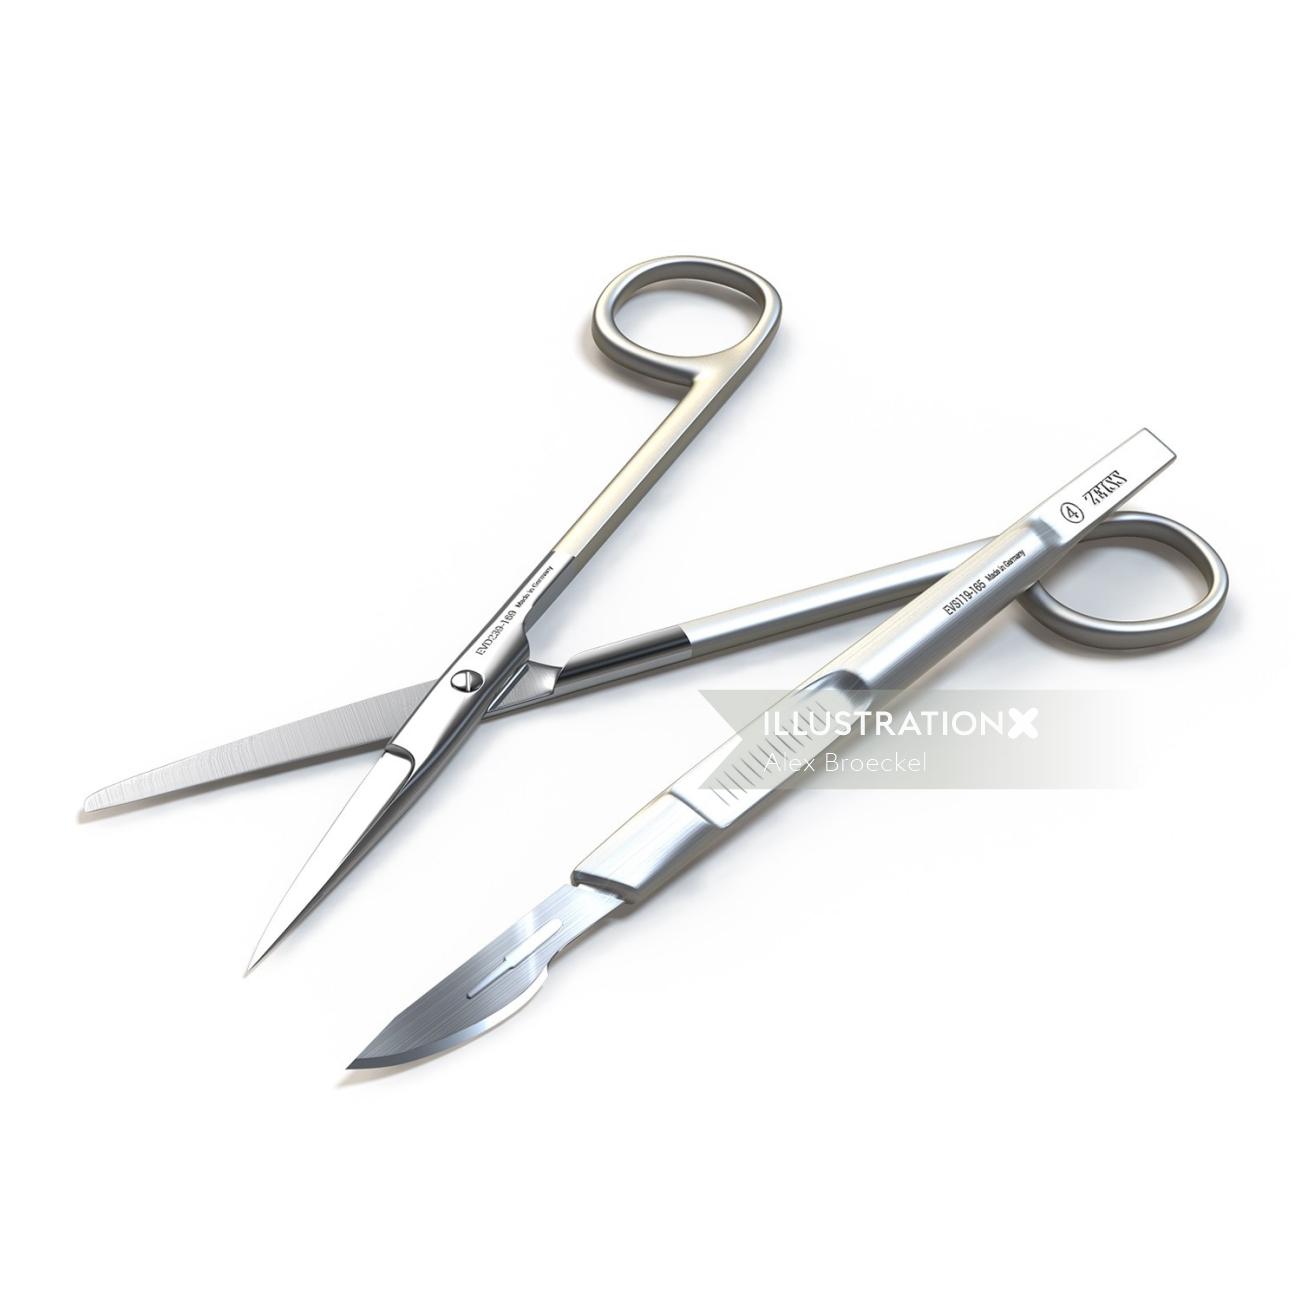 Une illustration de ciseaux médicaux et couteau